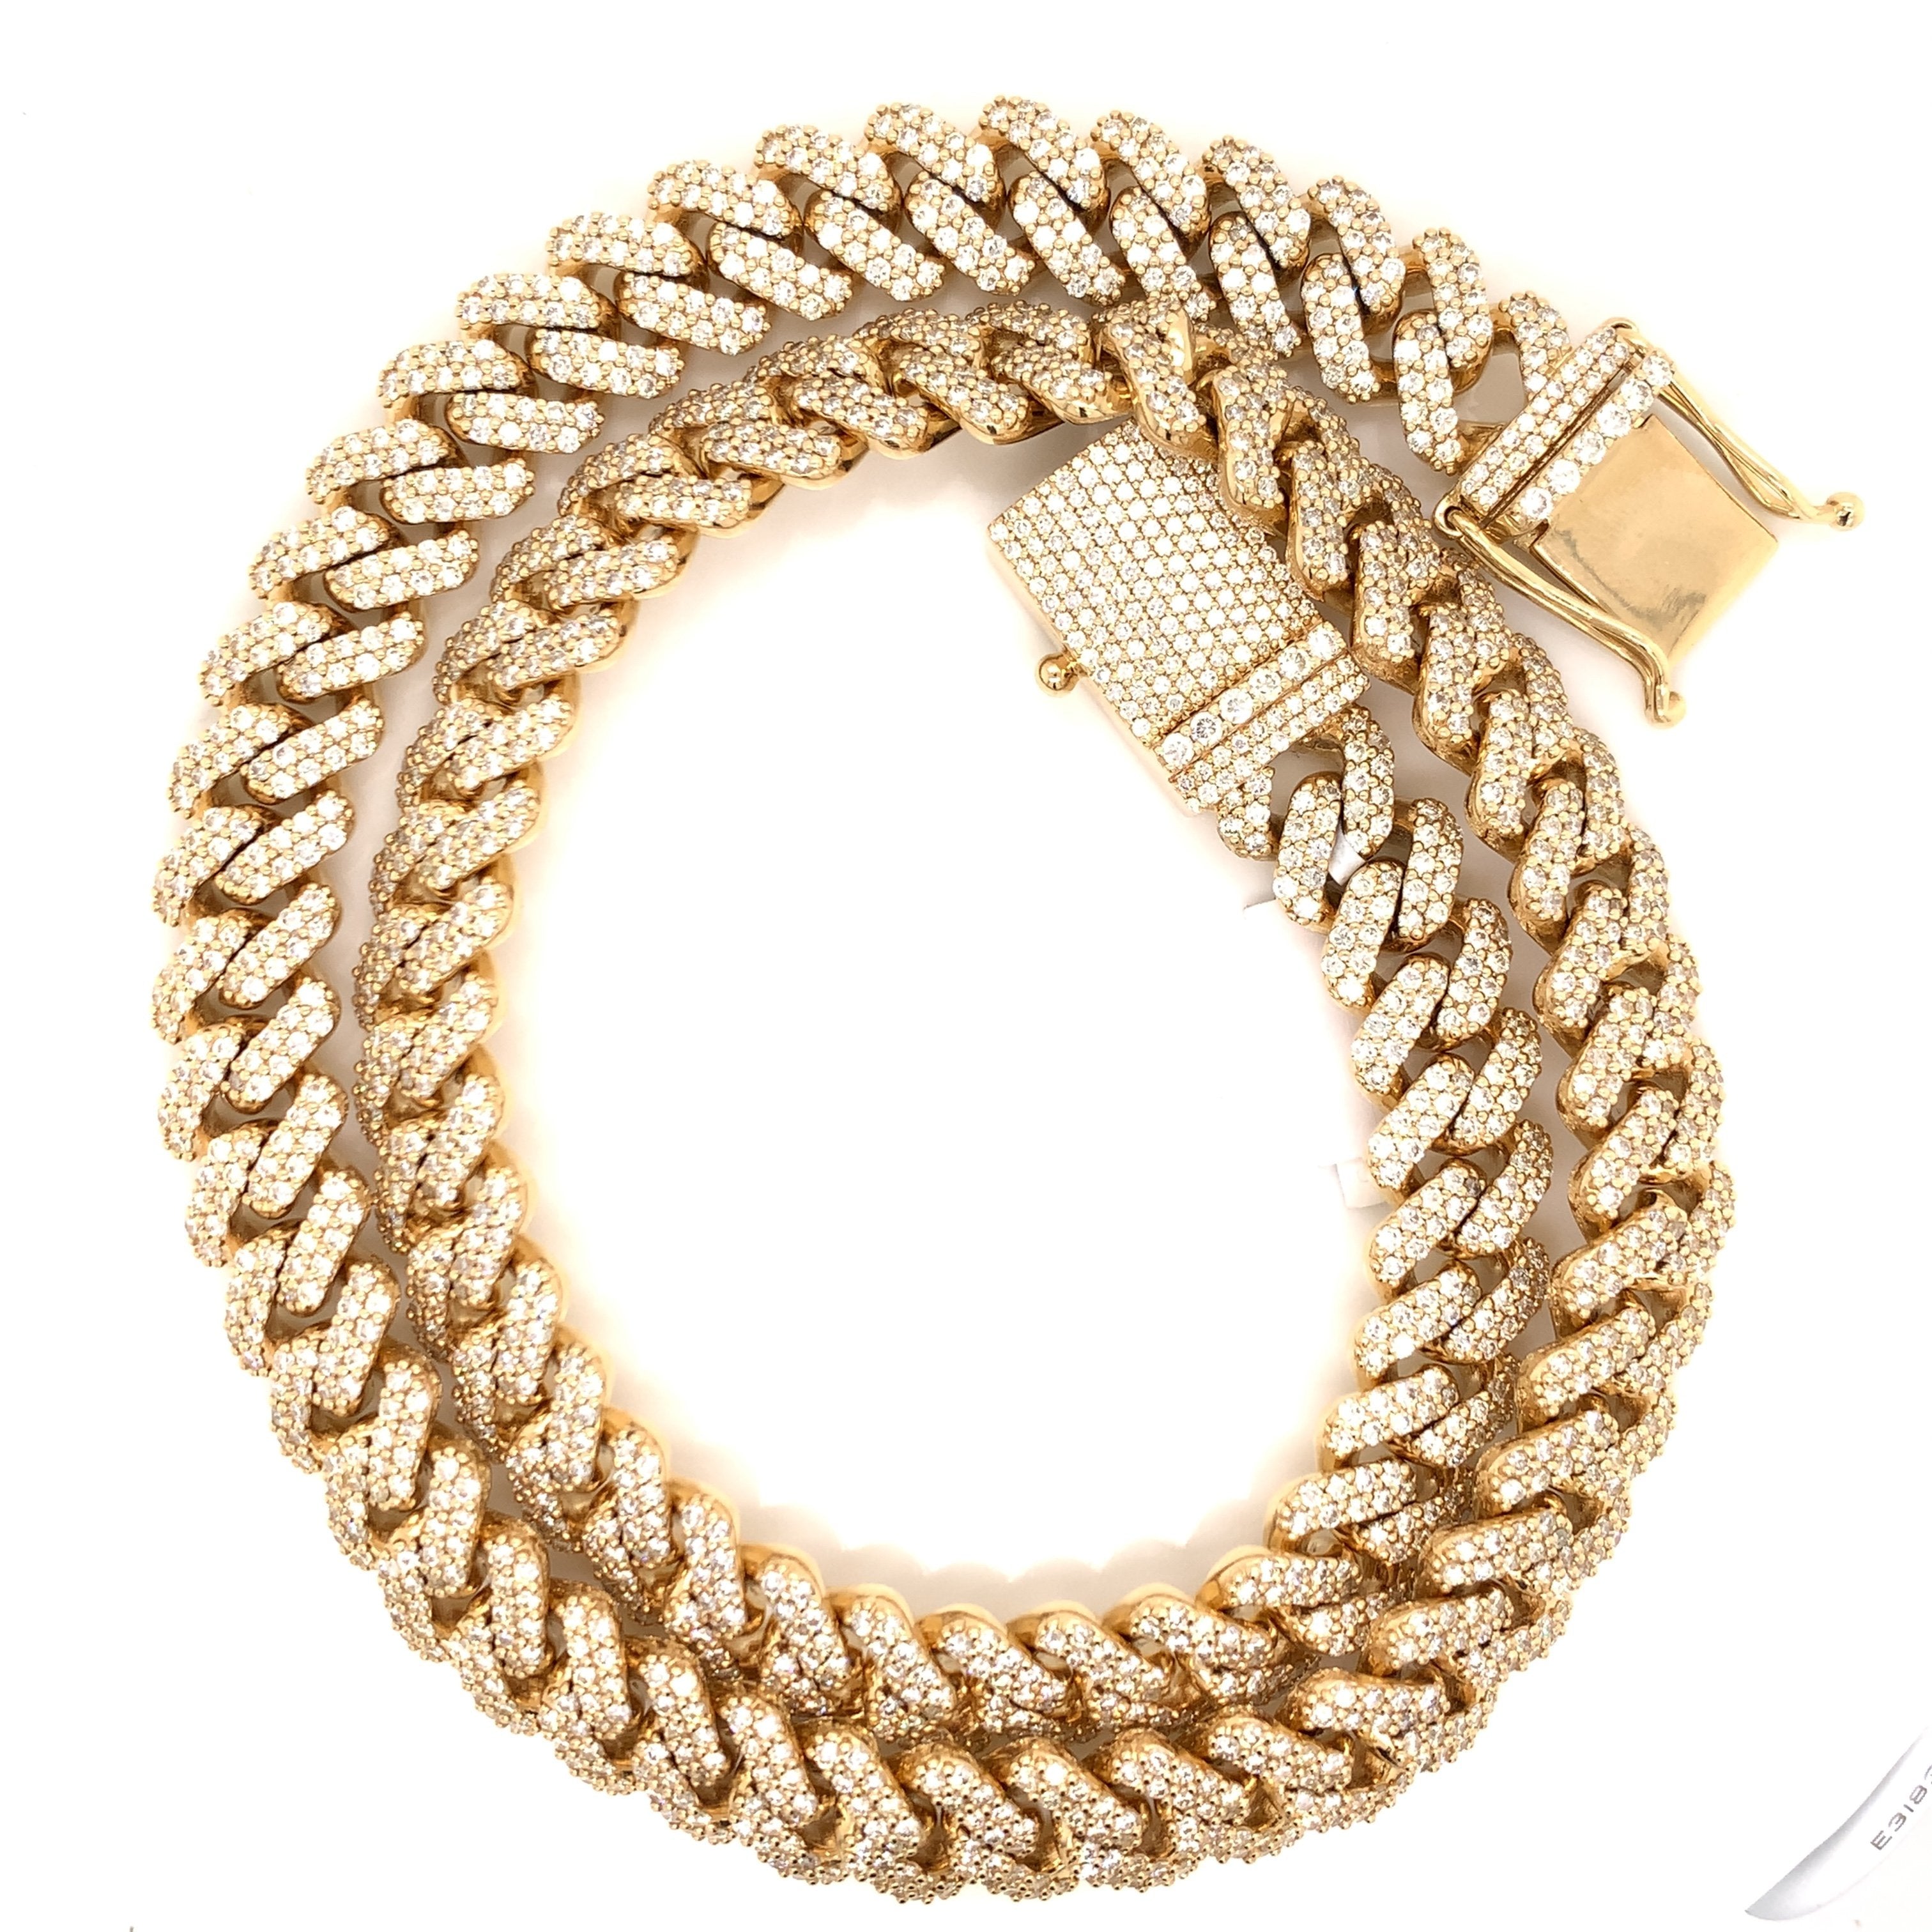 35.00 CT. Diamond Miami Cuban Chain in 14KT Gold - White Carat - USA & Canada